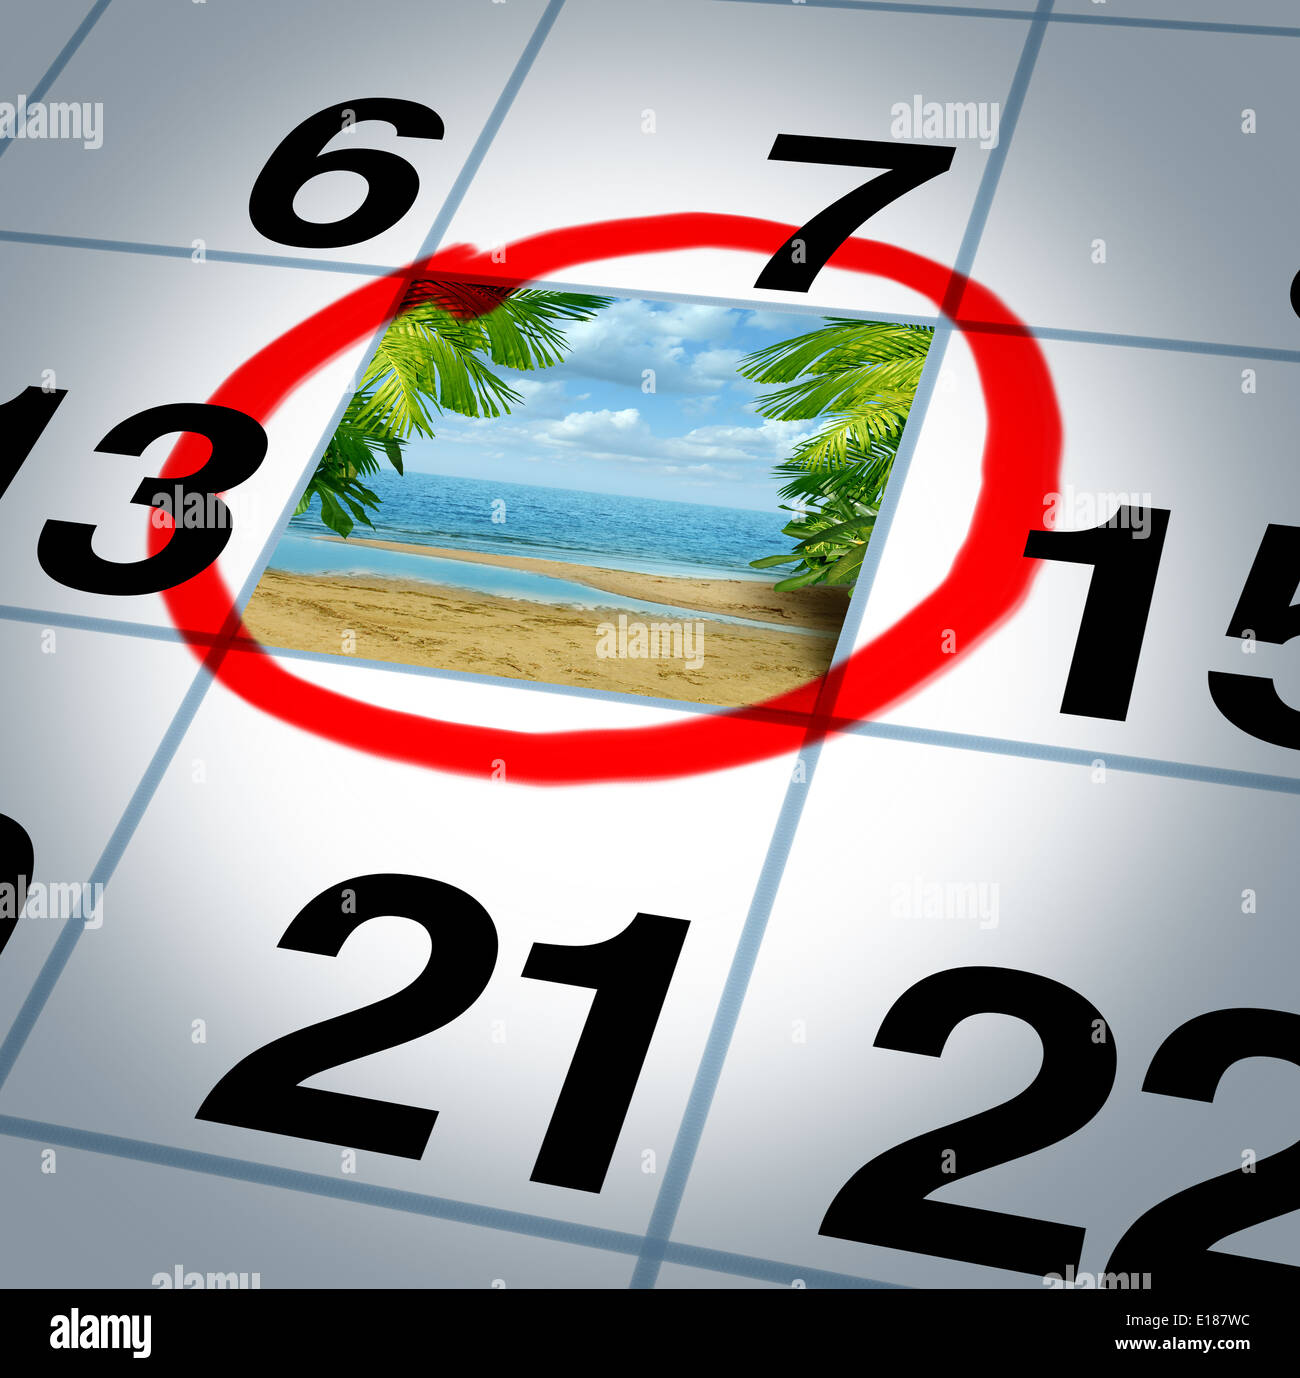 Urlaubsplan Reisen Konzept und Planung Ihrer Reise als eine Kalendererinnerung Datum mit einem sonnigen Strand und Palmen markiert mit einem roten Marker als Symbol für einen unterhaltsamen, entspannenden Urlaub Veranstaltung planen. Stockfoto